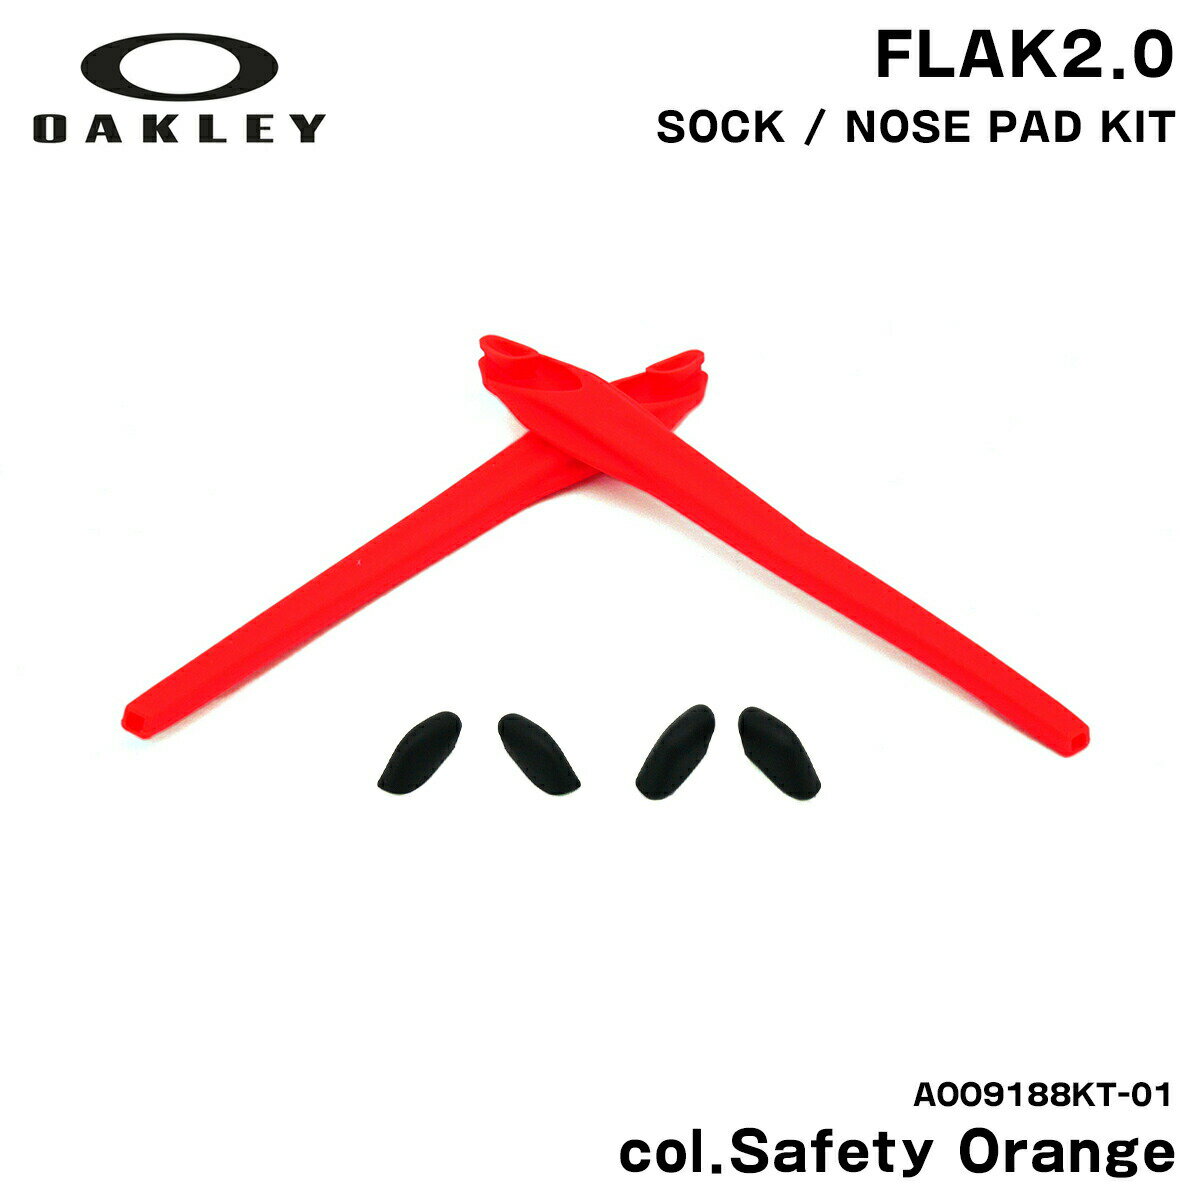 オークリー イヤーソック ノーズパッド フラック2.0 交換パーツ 国内正規品 AOO9188KT 01 セーフティーオレンジ OAKLEY OO9271 FLAK2.0 (A) OO9188 FLAK2.0 XL